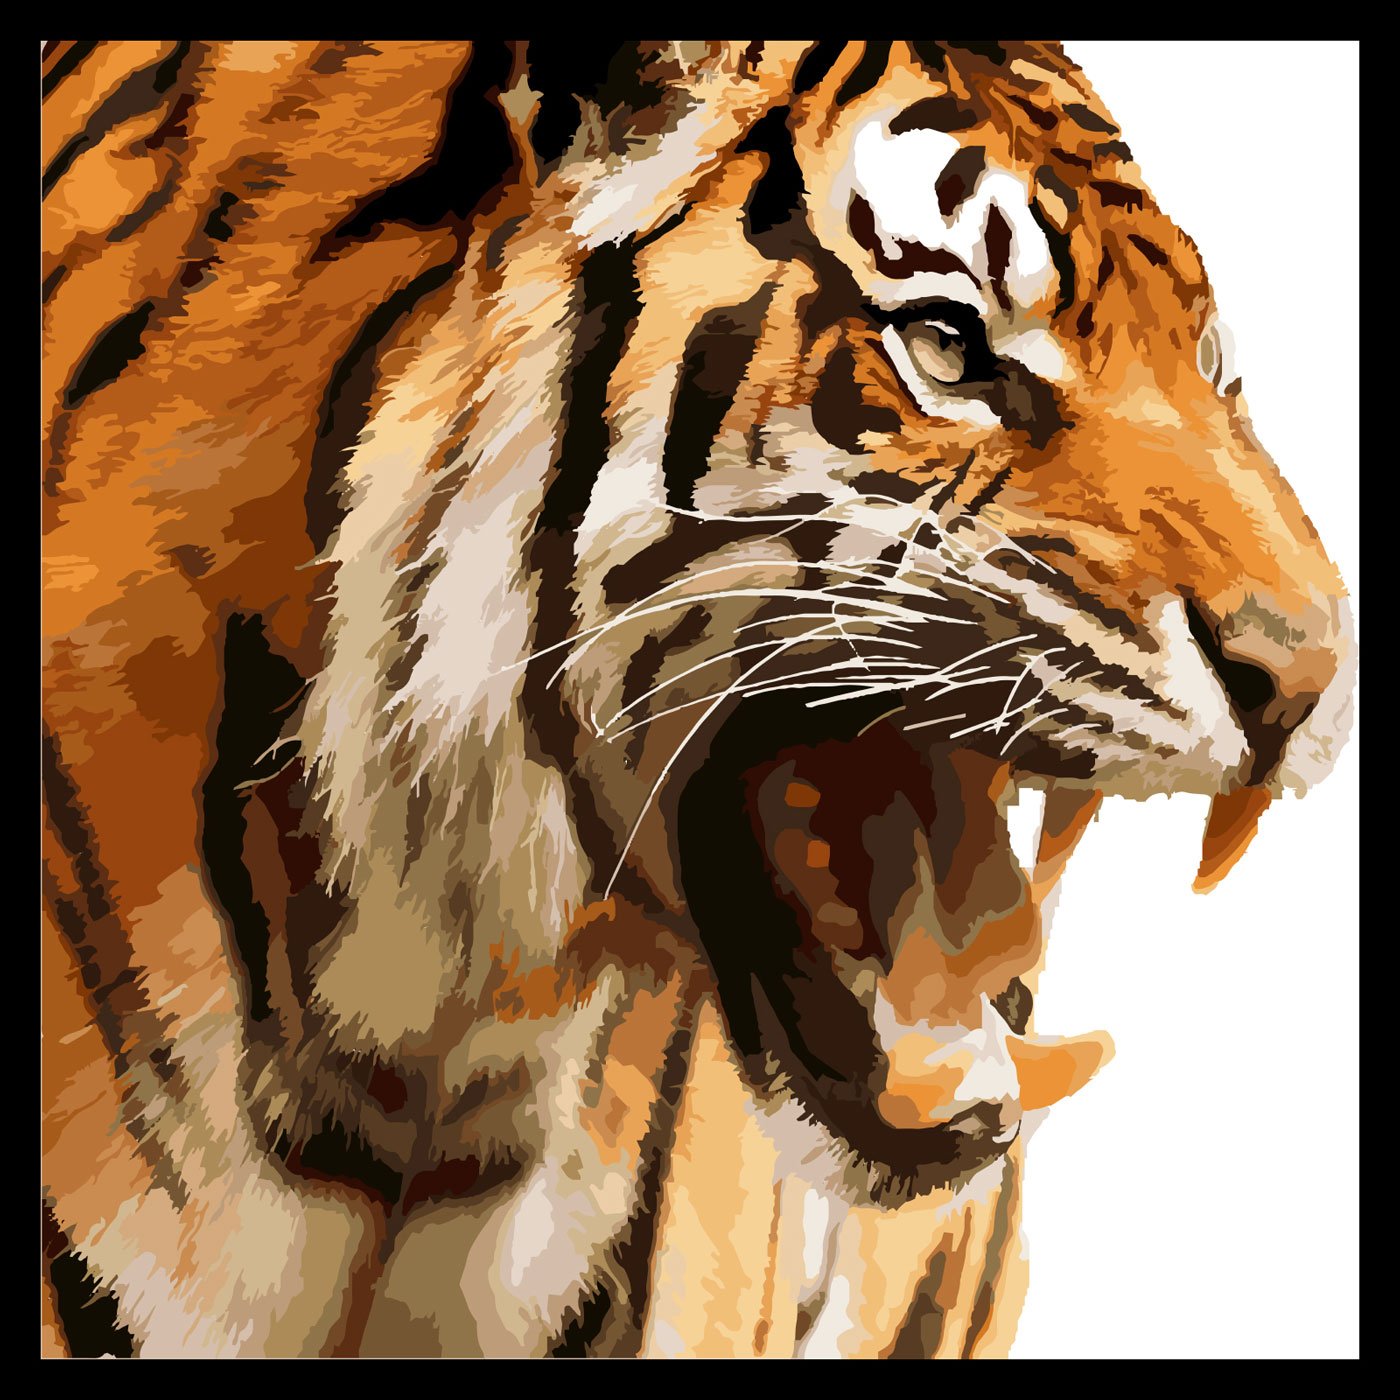 Quadro Tigre Imponente (2)